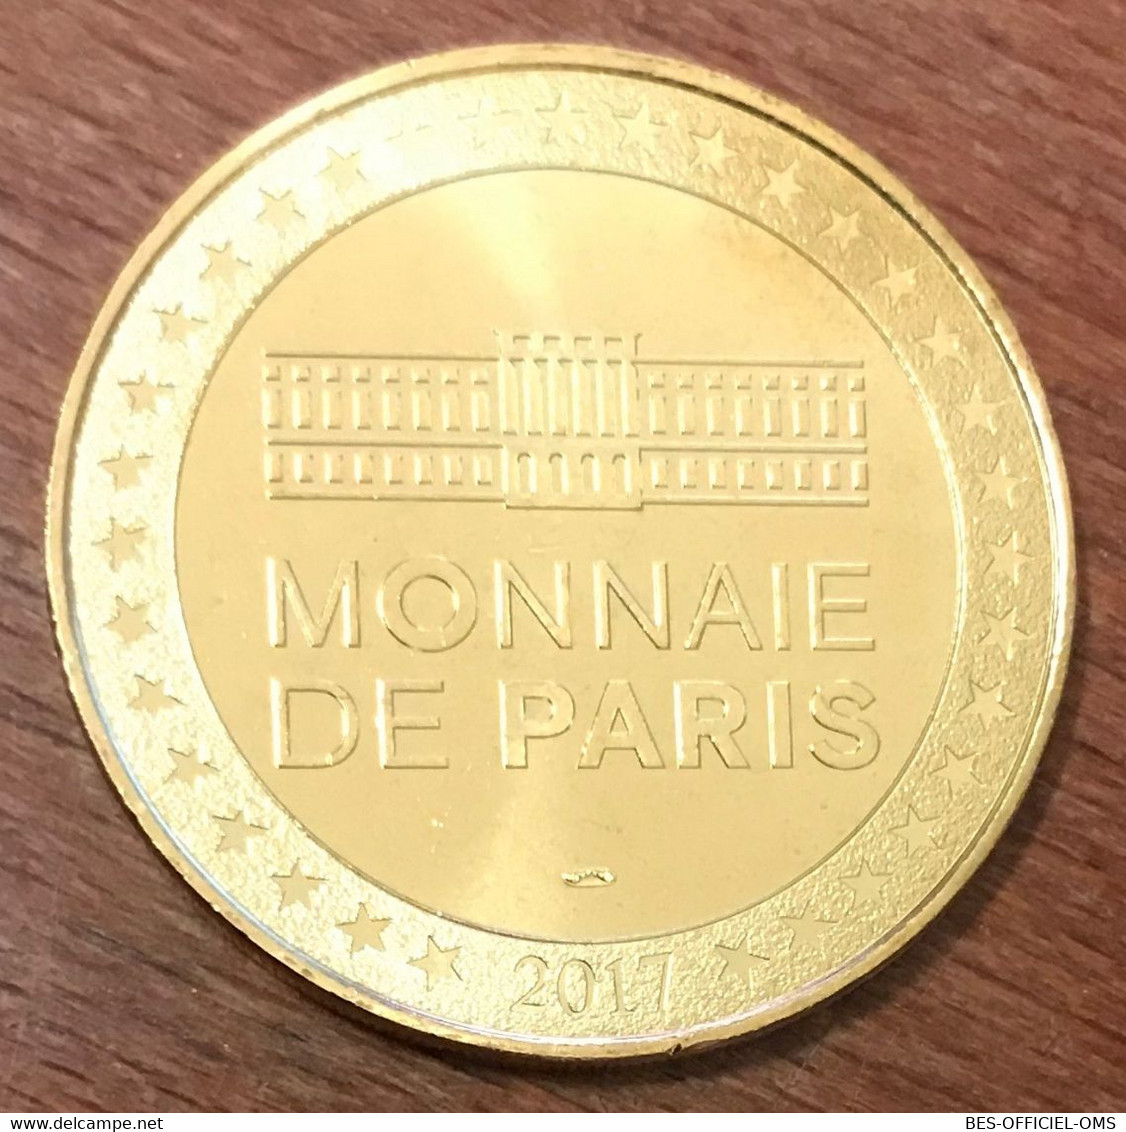 25 CITADELLE DE BESANÇON UNESCO MDP 2017 MEDAILLE SOUVENIR MONNAIE DE PARIS JETON TOURISTIQUE MEDALS COINS TOKENS - 2017